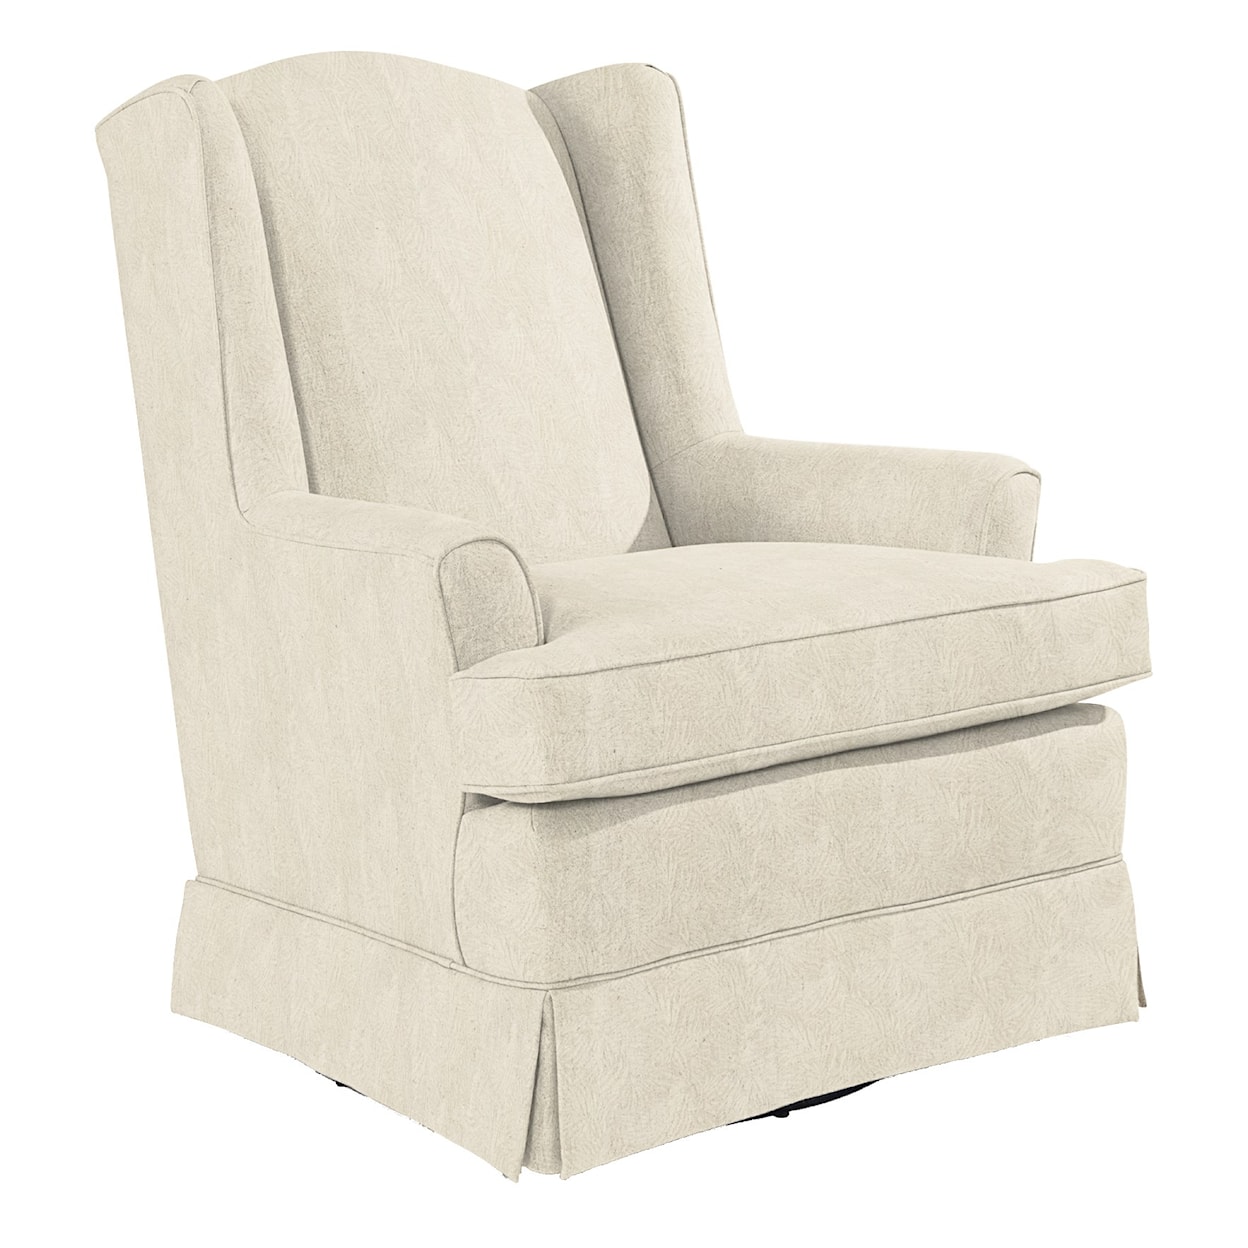 Best Home Furnishings Swivel Glide Chairs Natasha Swivel Glider